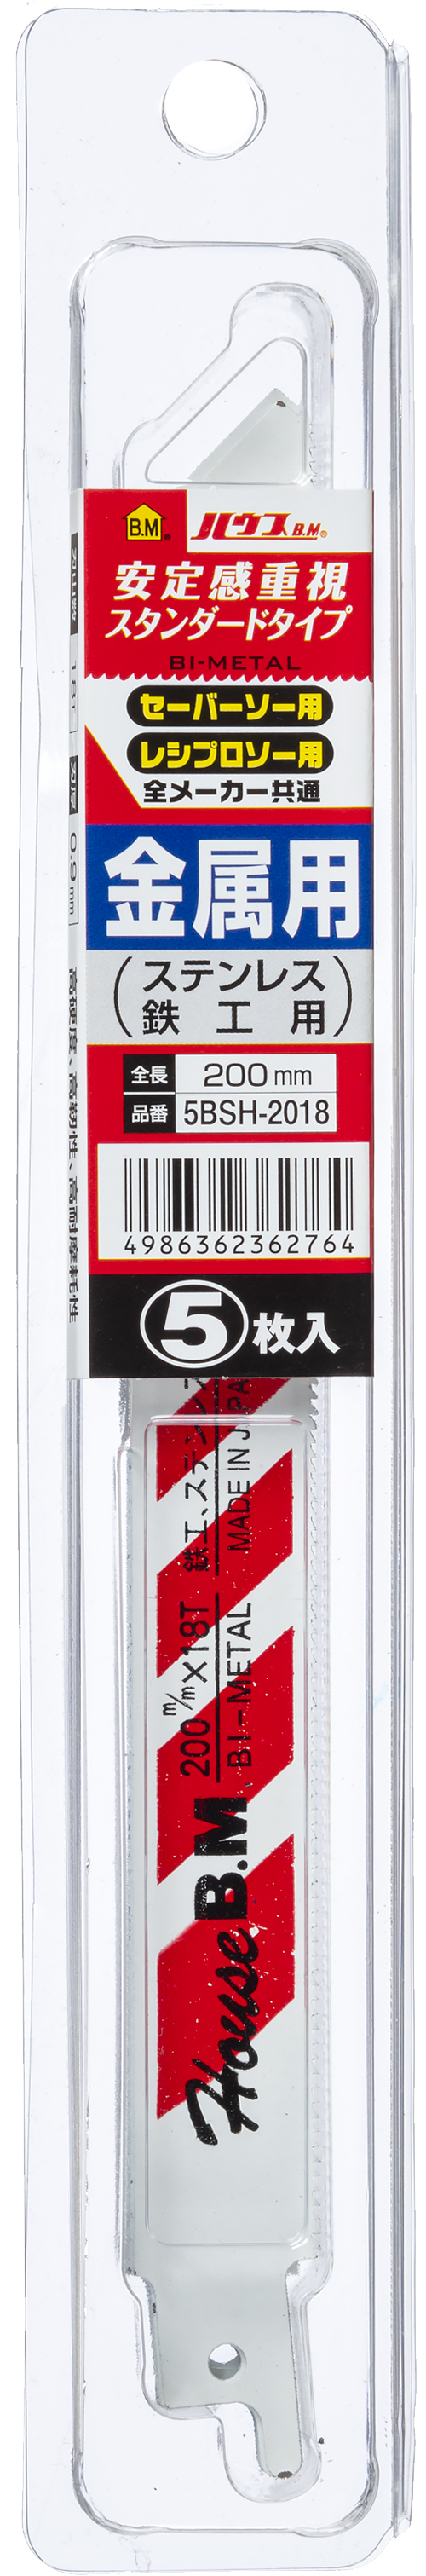 BSH(レッドライン) セーバーソー・レシプロソー替刃 | 製品情報